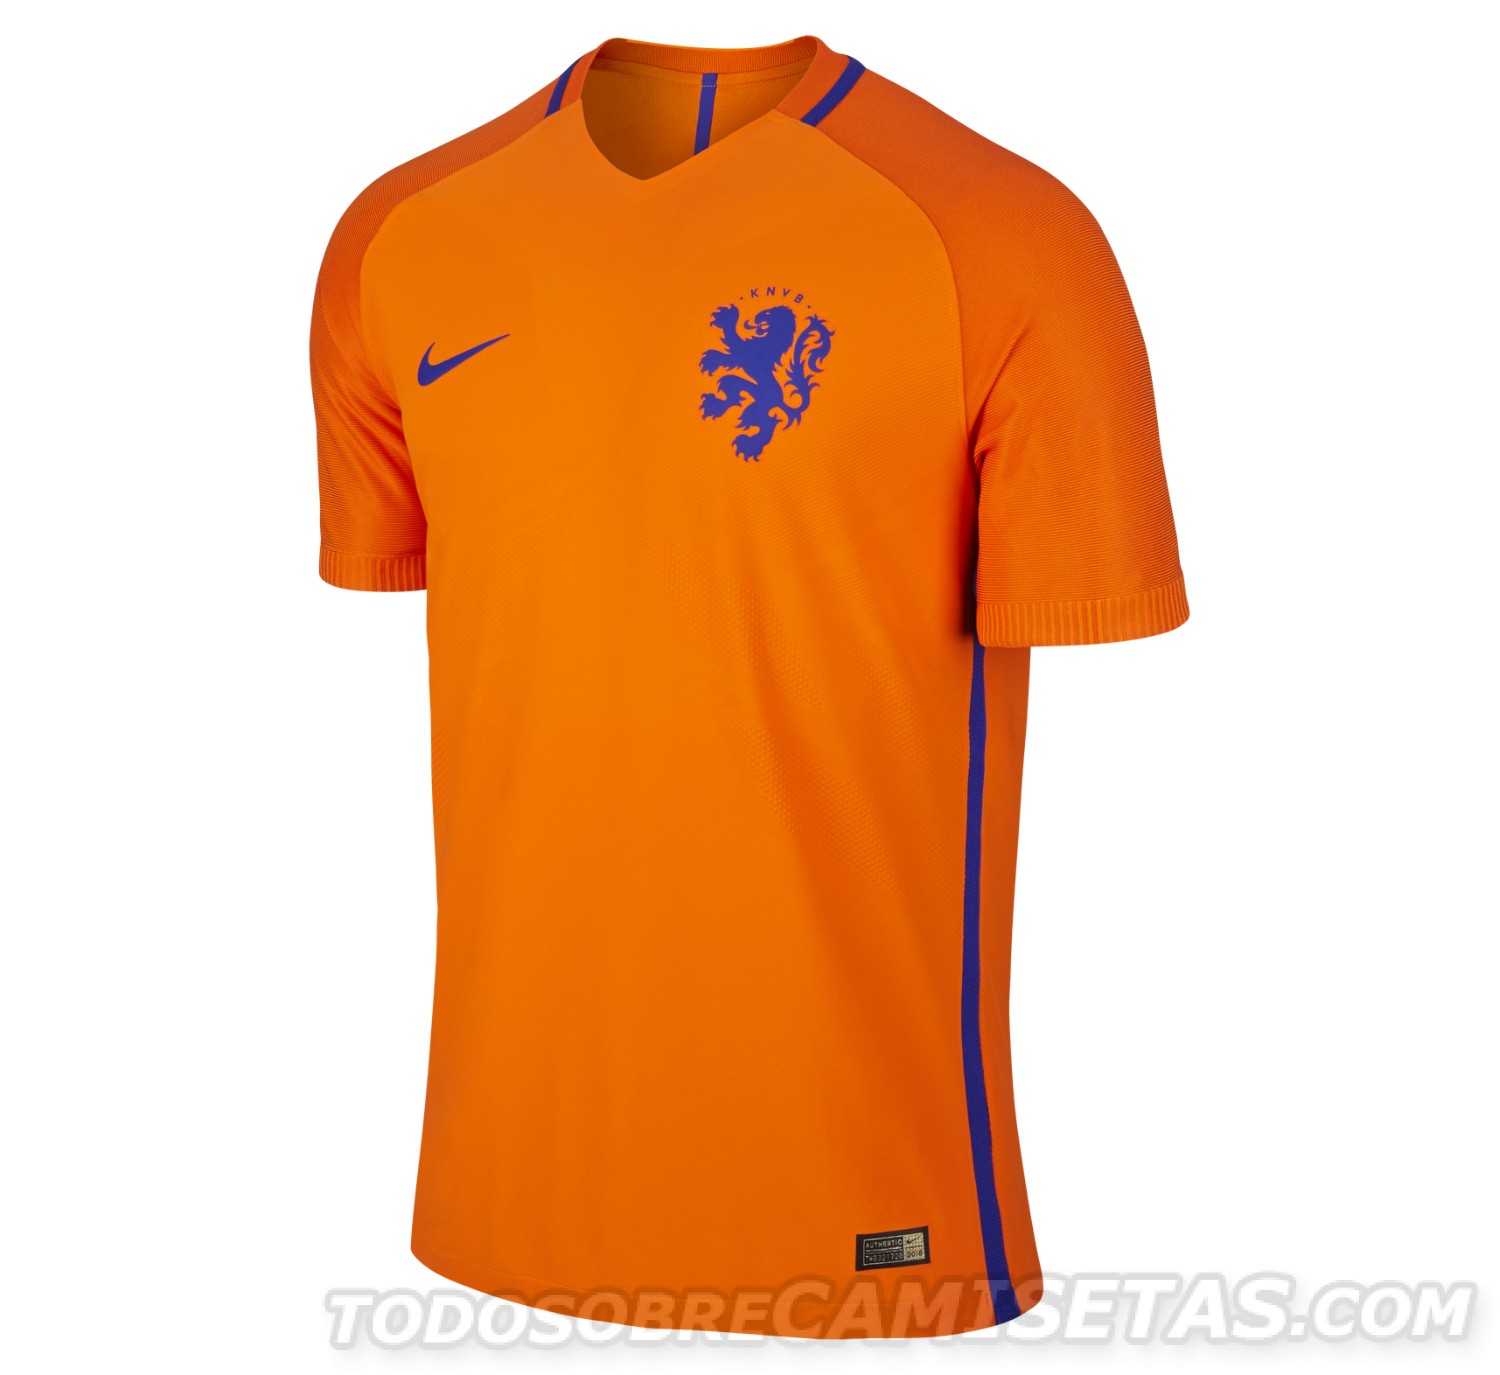 Netherlands Nike 2016 kits